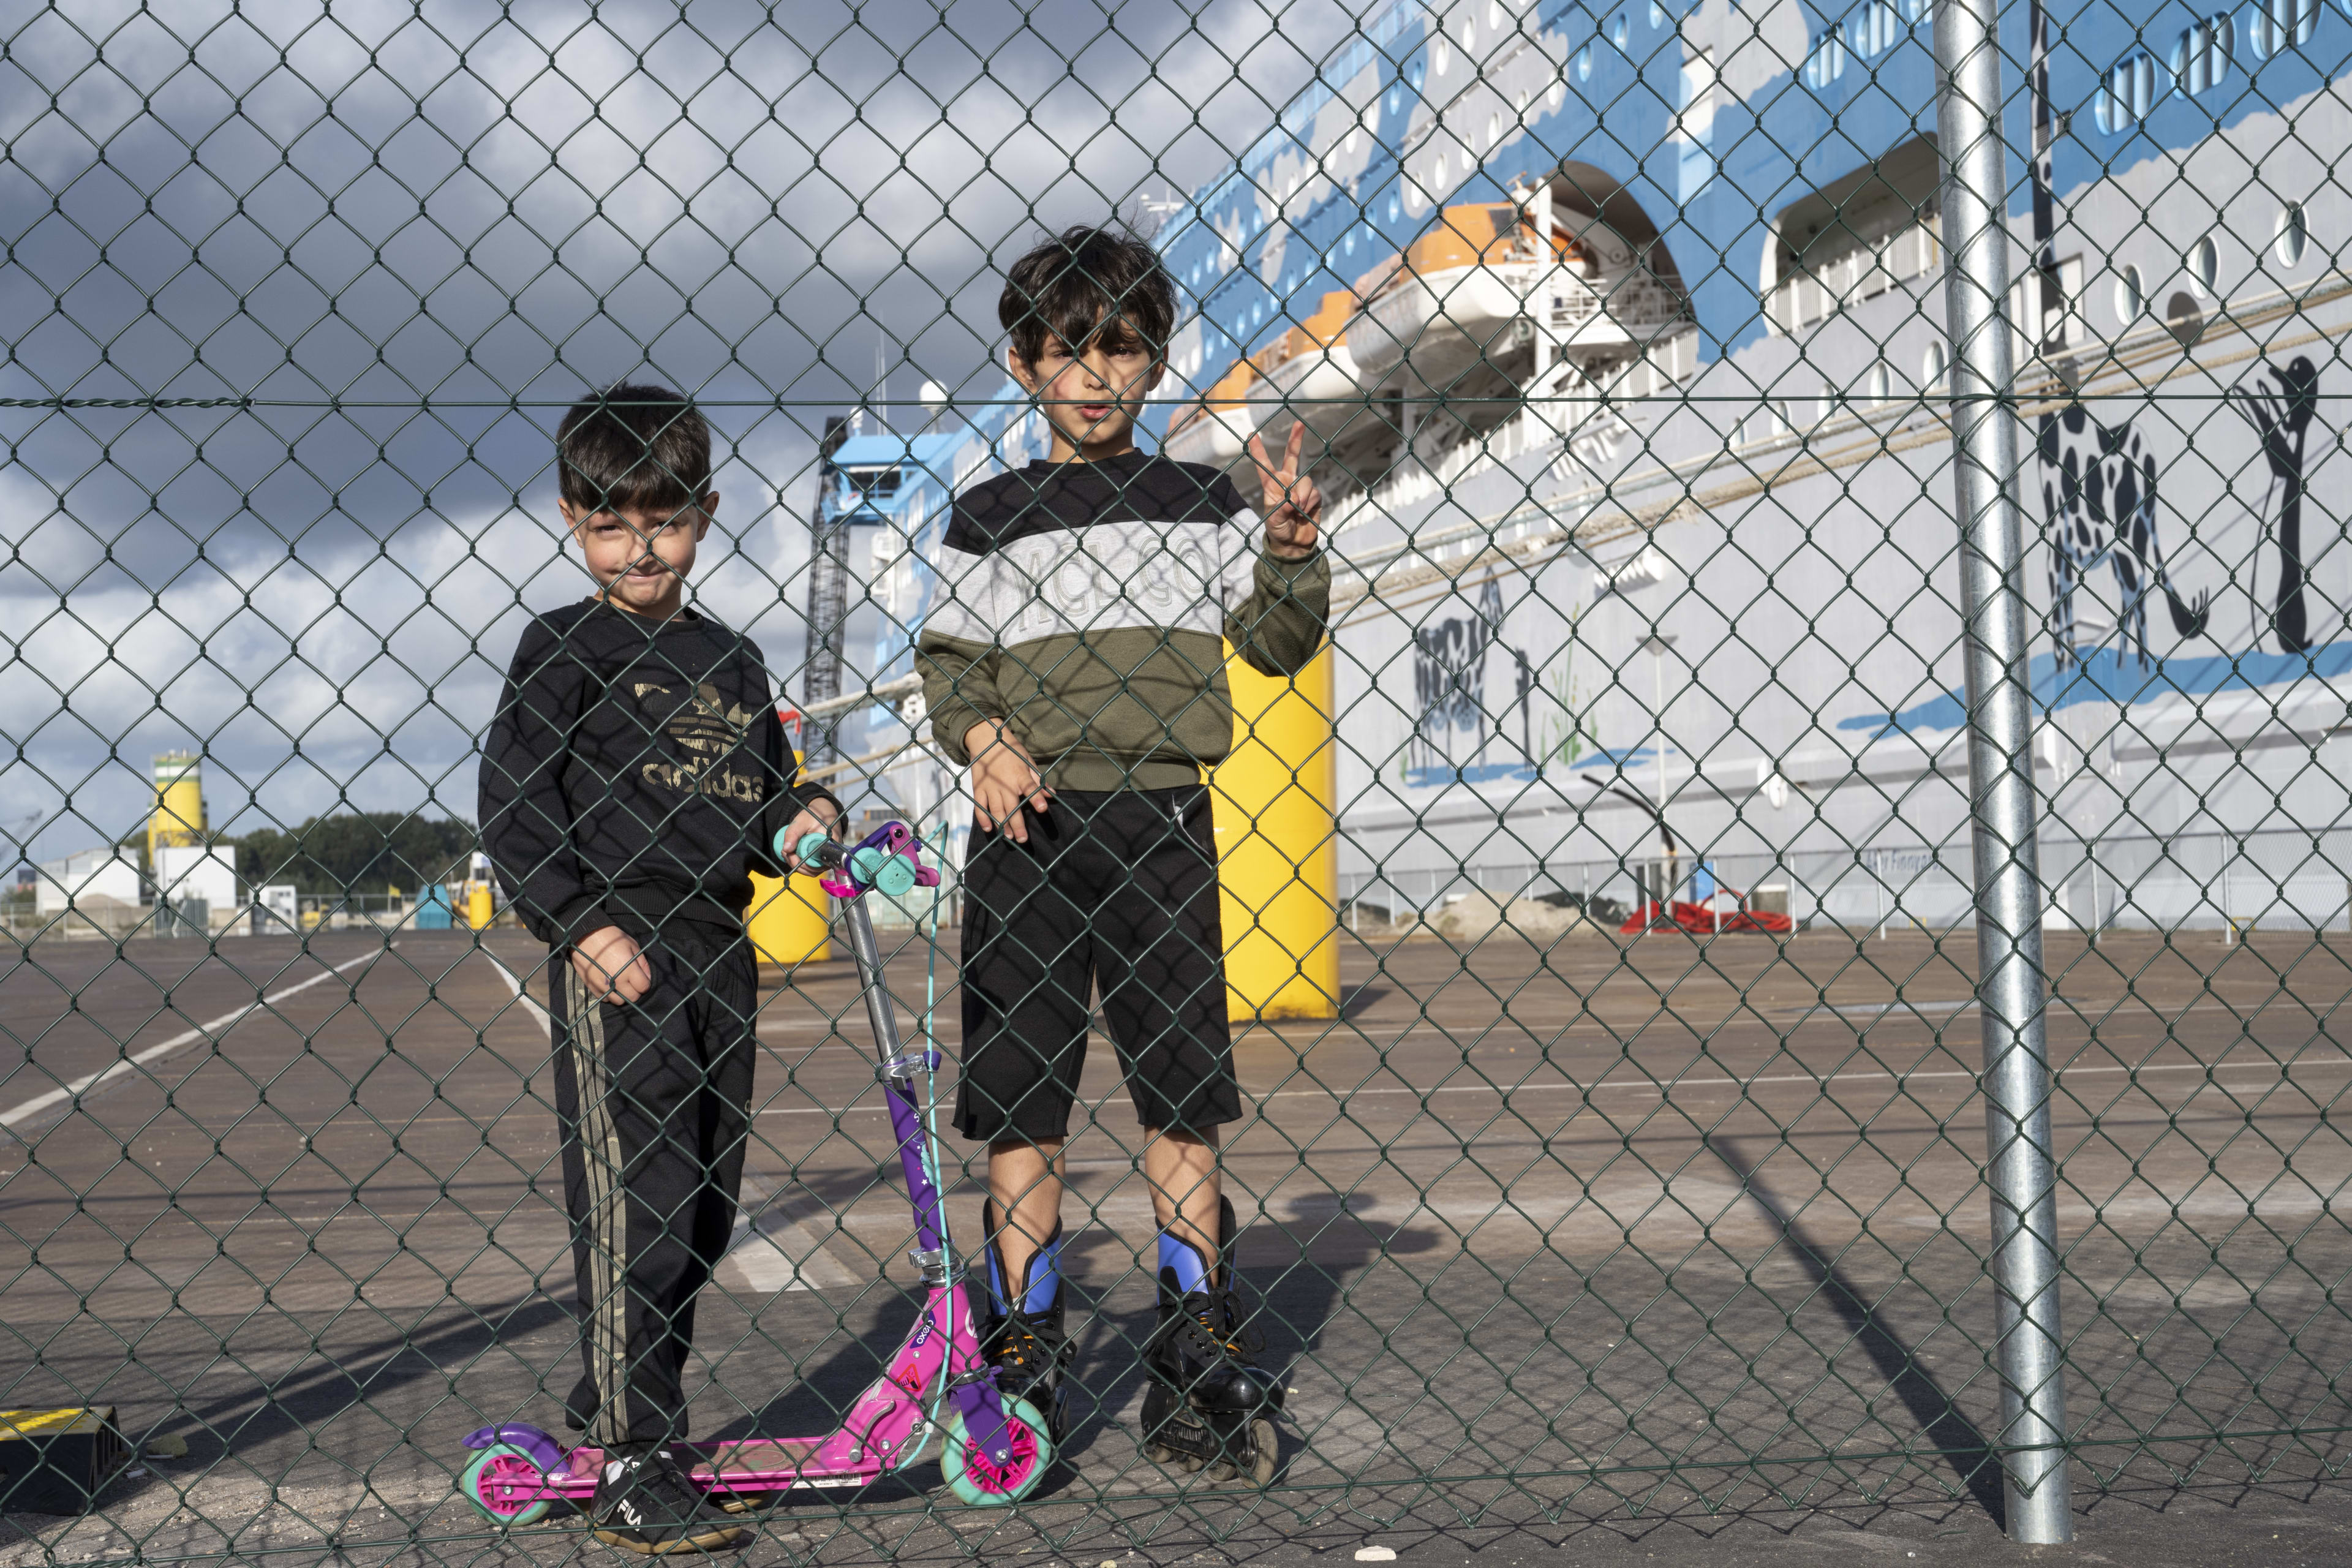 Zorgen over veiligheid kinderen in asielketen, OVV start onderzoek